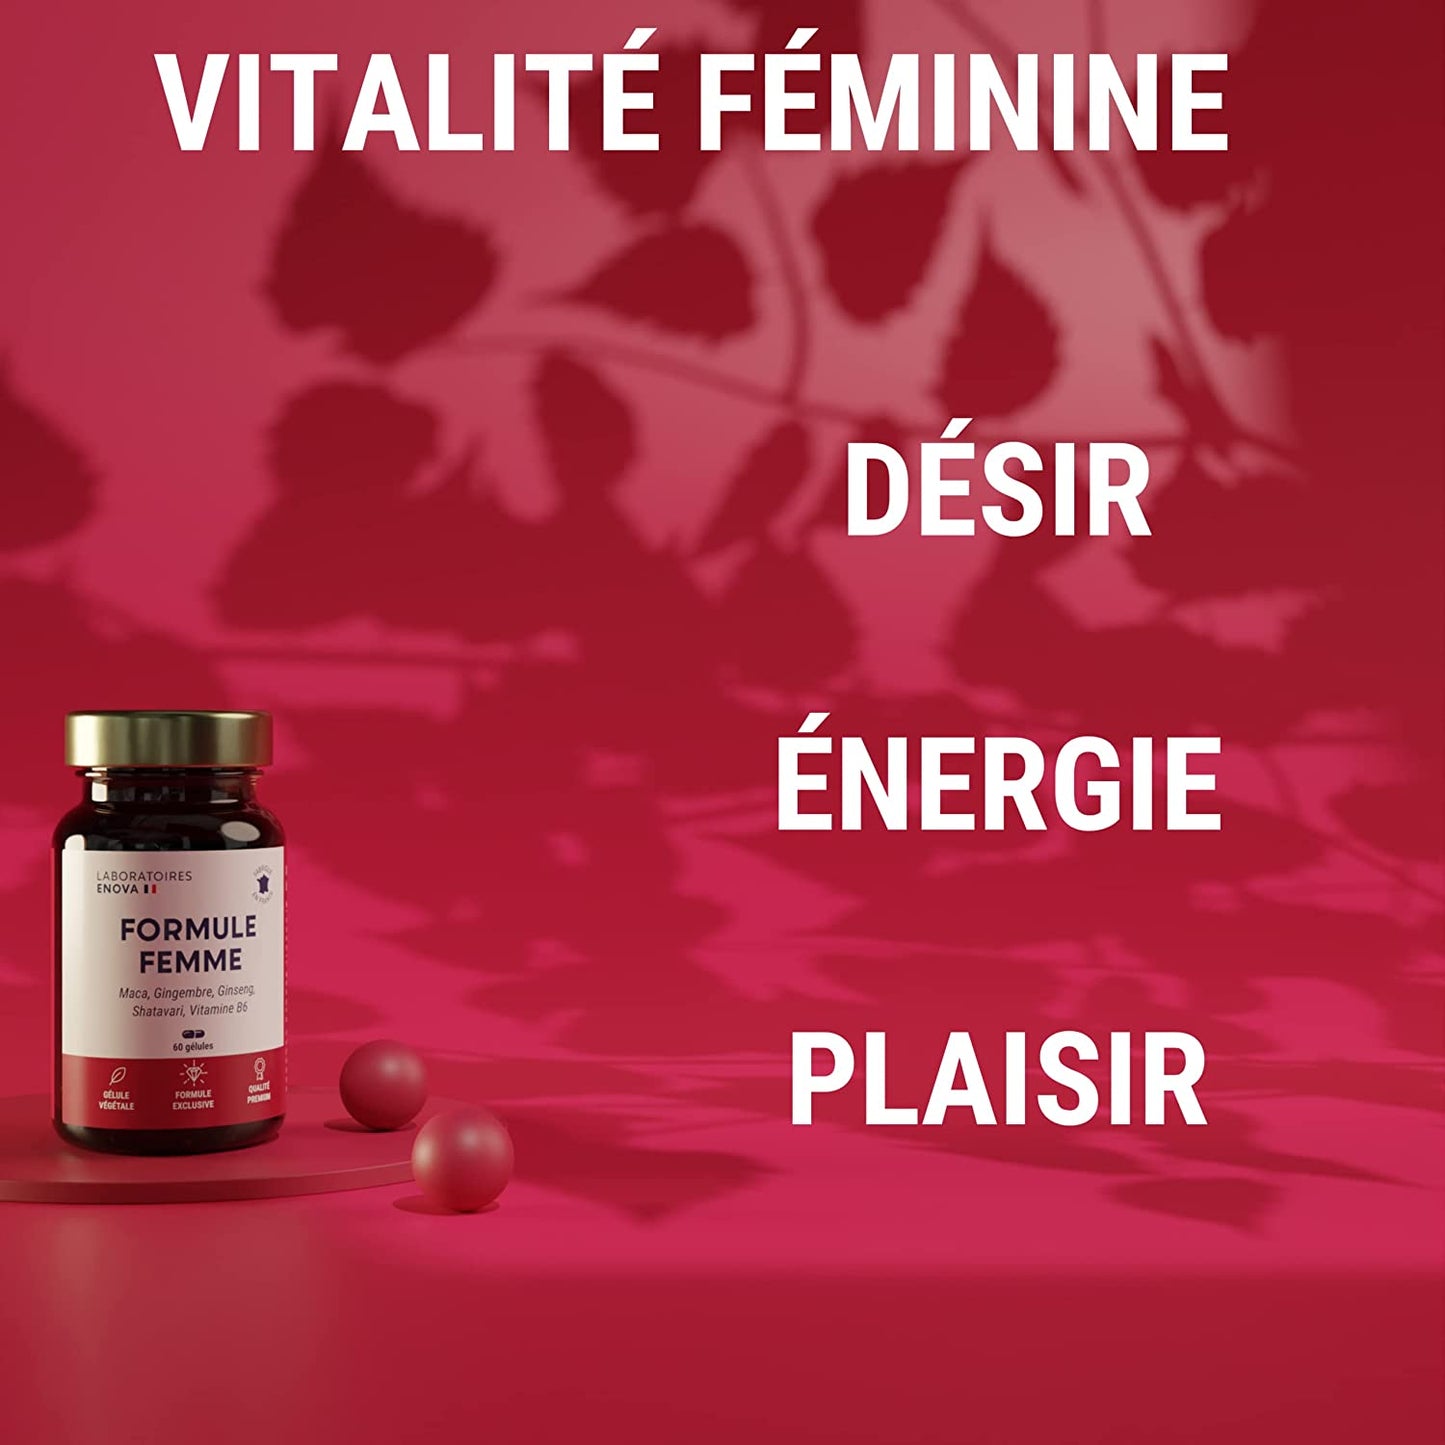 FORMULE FEMME - Vitalité Féminine - Désir, Energie, Plaisir